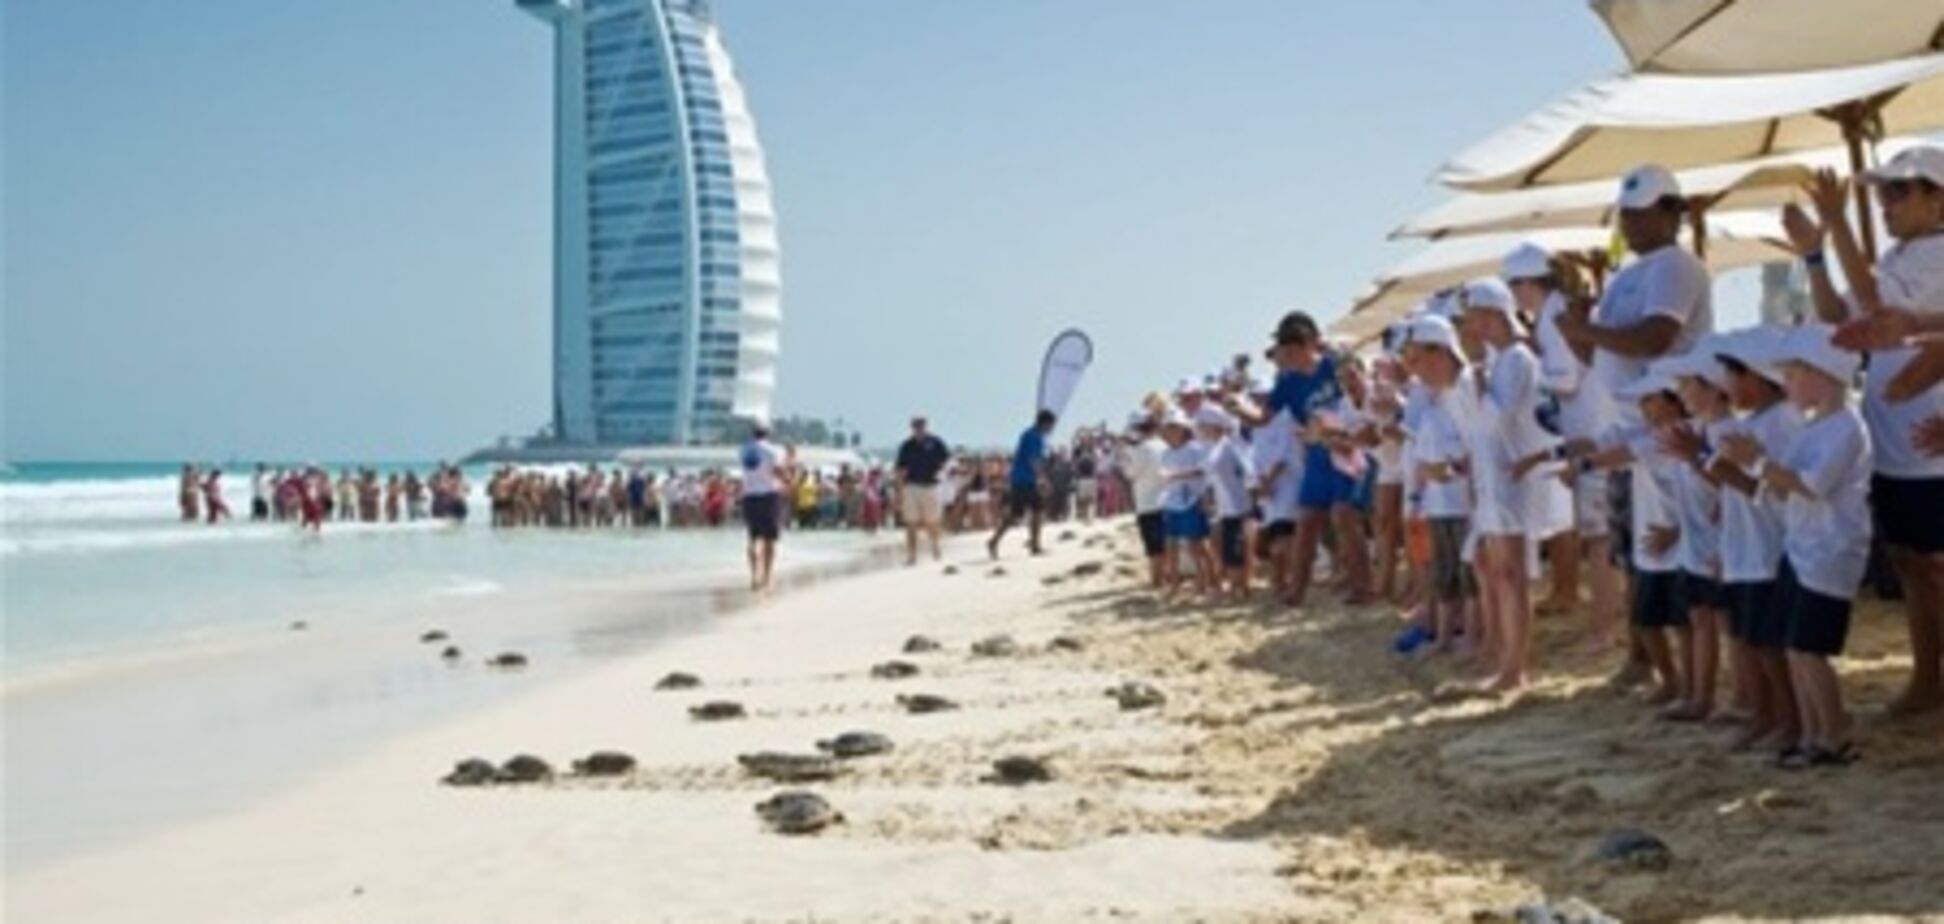 29 июня на пляже Madinat Jumeirah в море выпустят сотню черепах